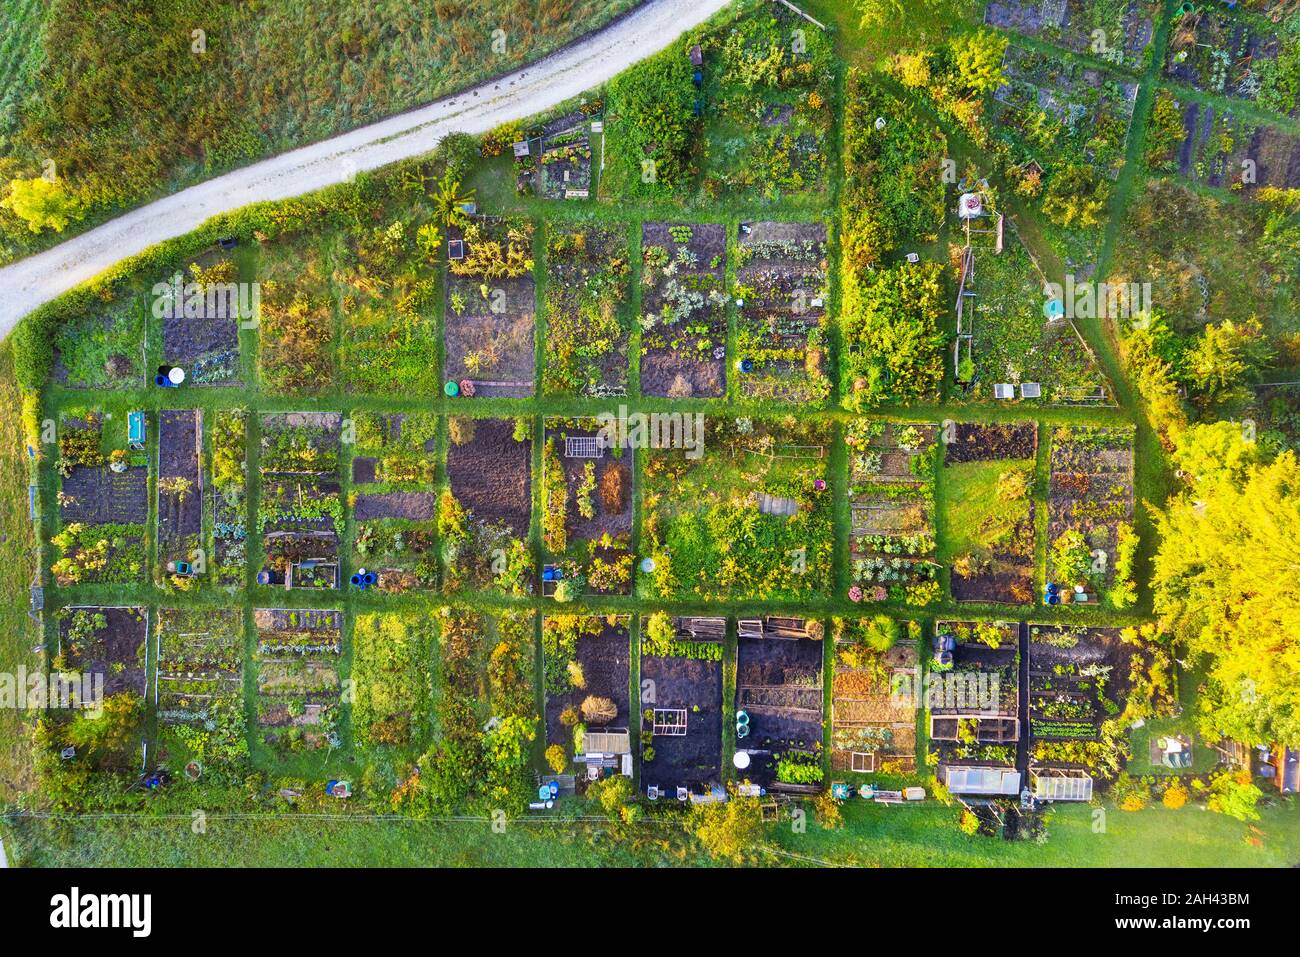 Alemania, Baviera, Geretsried, vista aérea de las filas de la verde campiña jardines Foto de stock